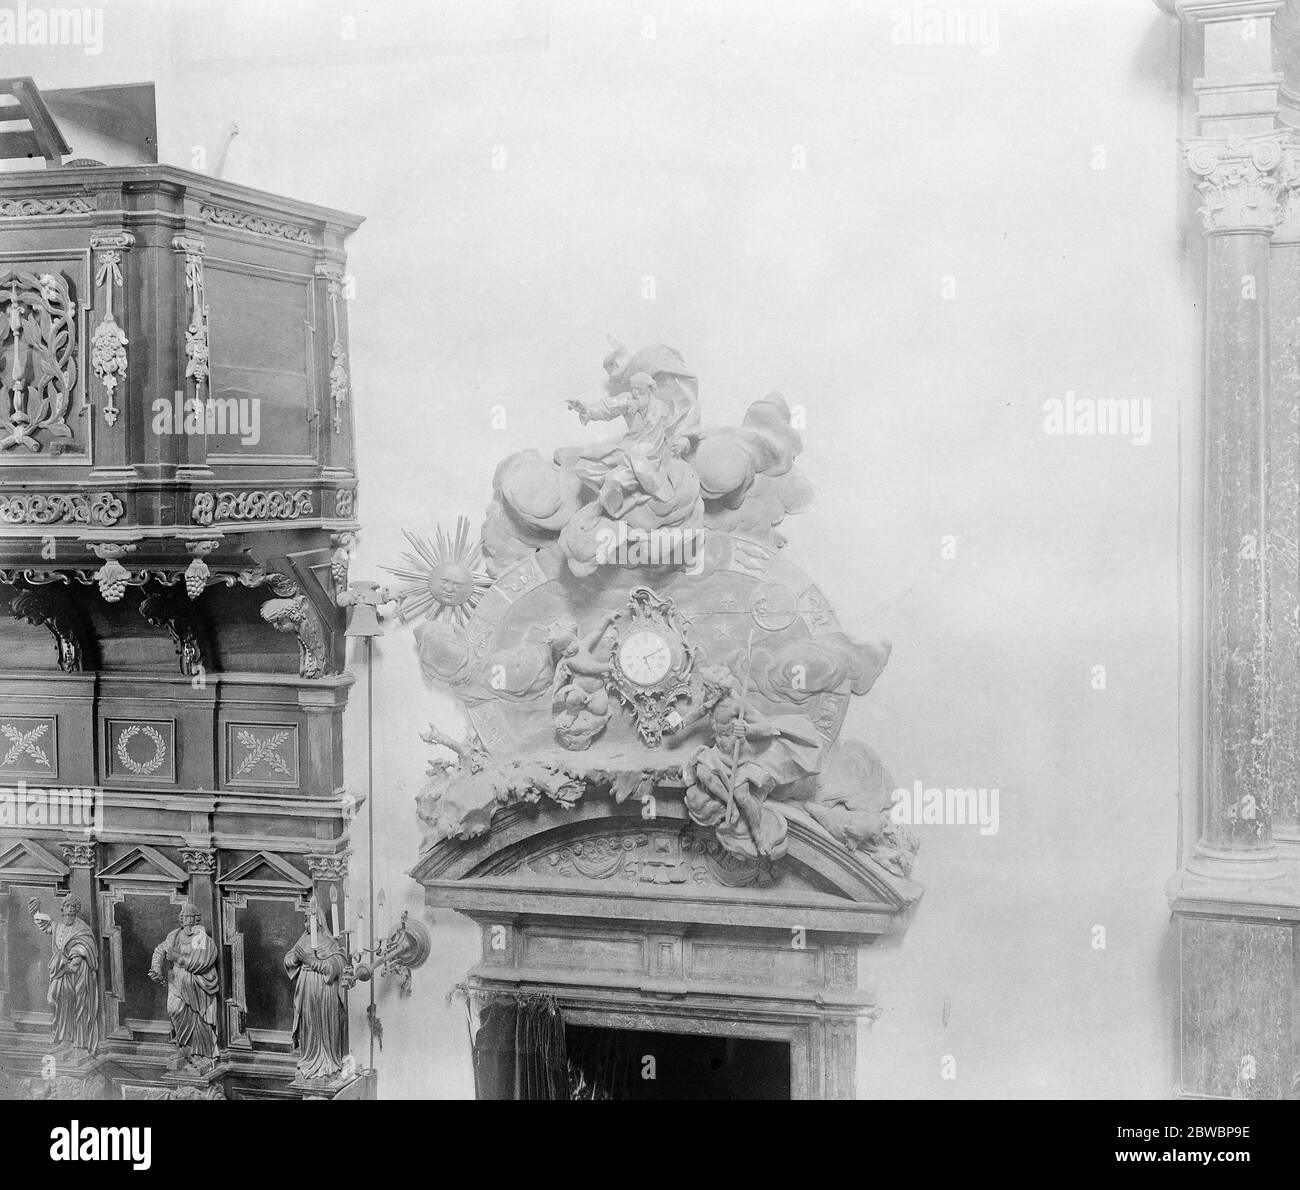 Une horloge merveilleuse dans la cathédrale , Varsovie . La sculpture autour de l'horloge représente Dieu créant le monde 25 octobre 1921 Banque D'Images